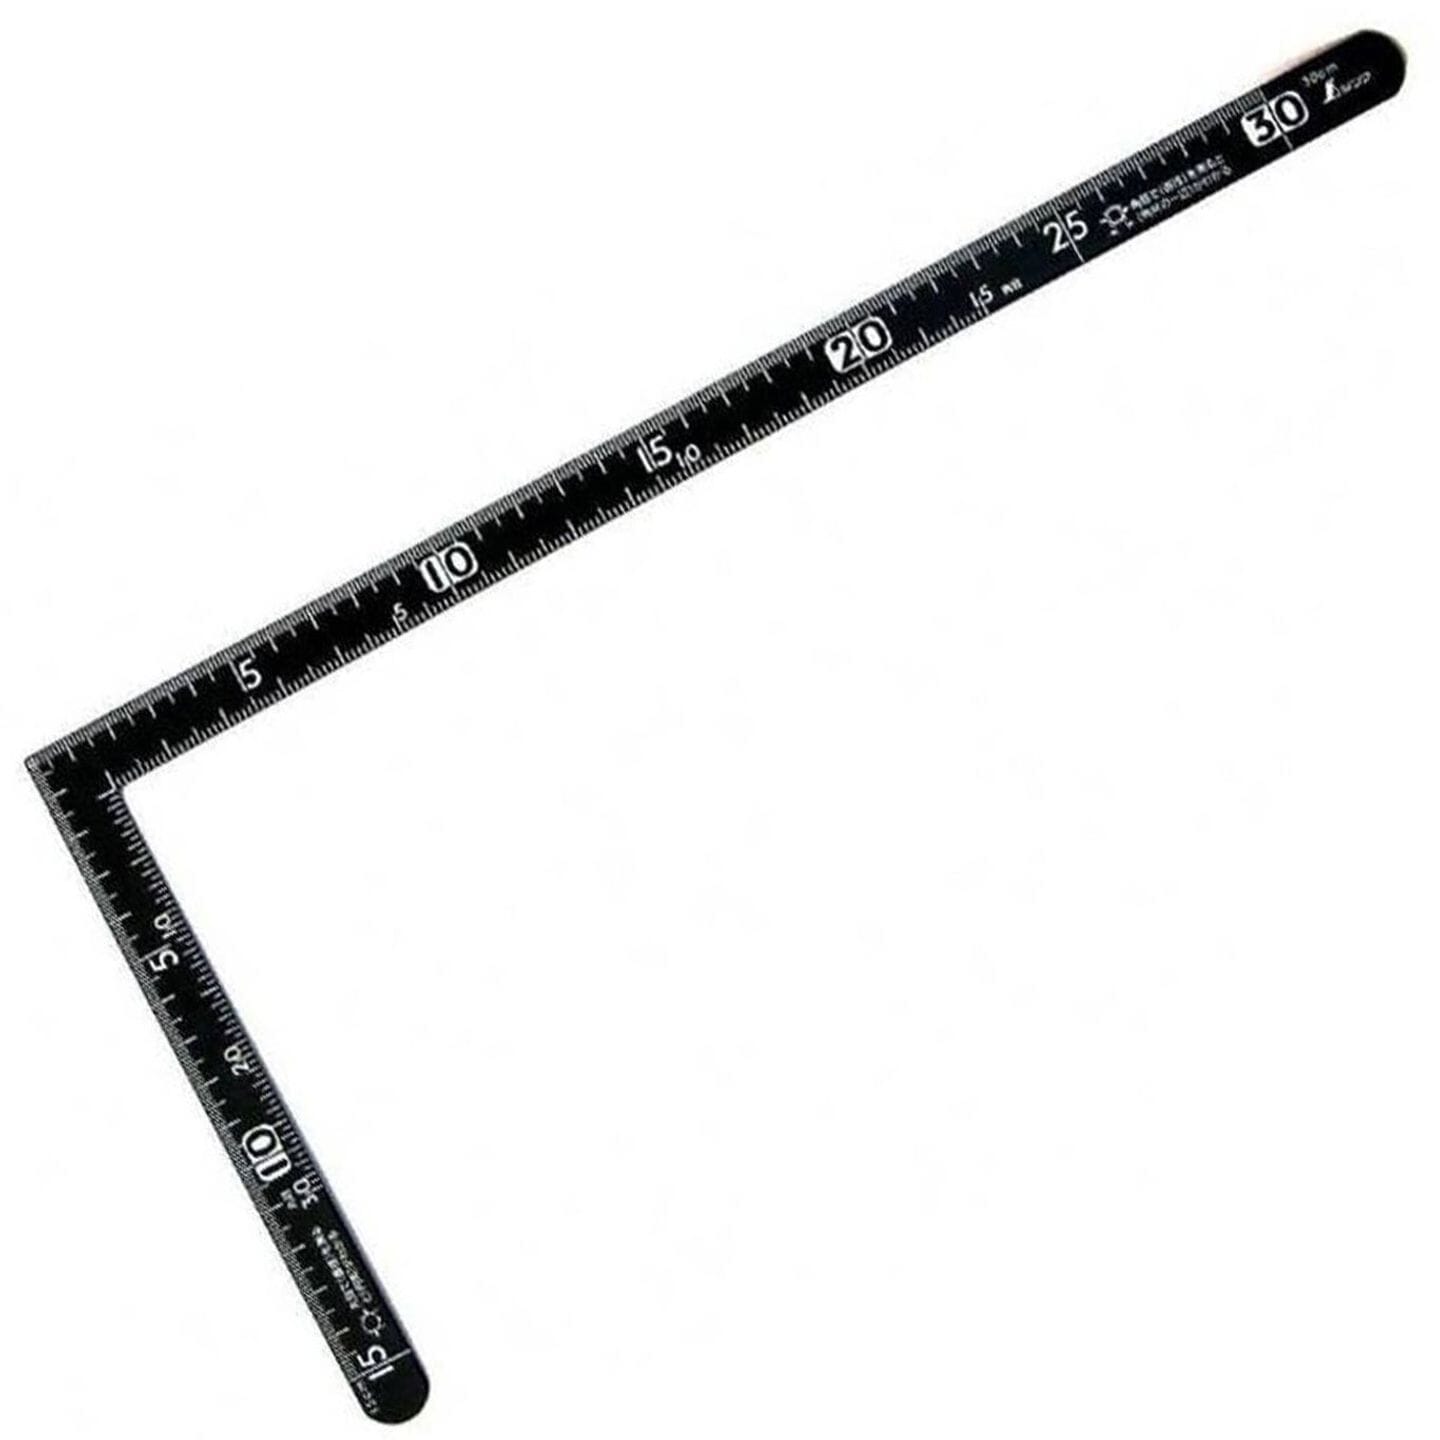 Metal Ruler L-Square Measuring Tool 30cm Professional Straight Ruler 